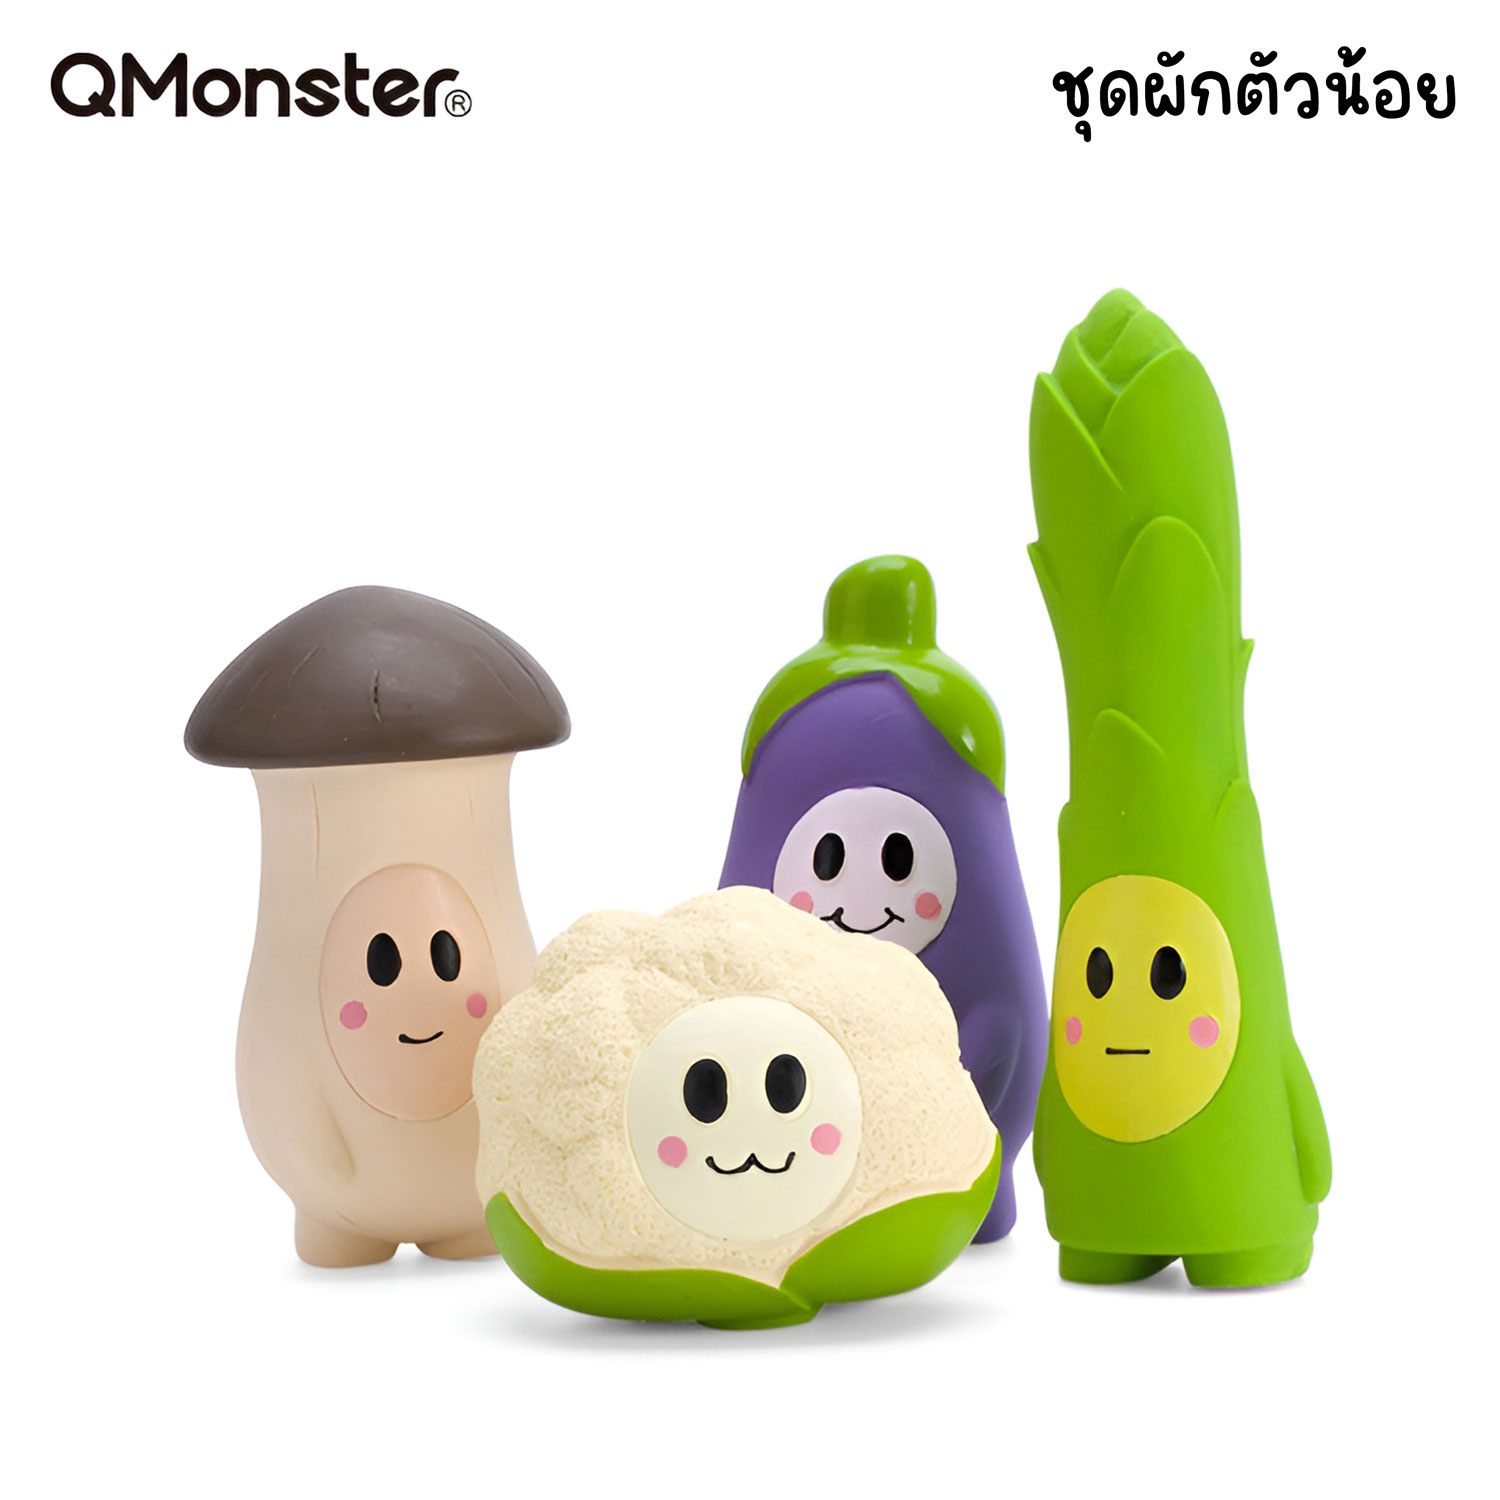 Q-monster Little Vegetables ของเล่นสุนัข ชุดผักตัวน้อย ทำจากยางพารา กัดมันส์ เคี้ยวเพลิน มีเสียงร้อง